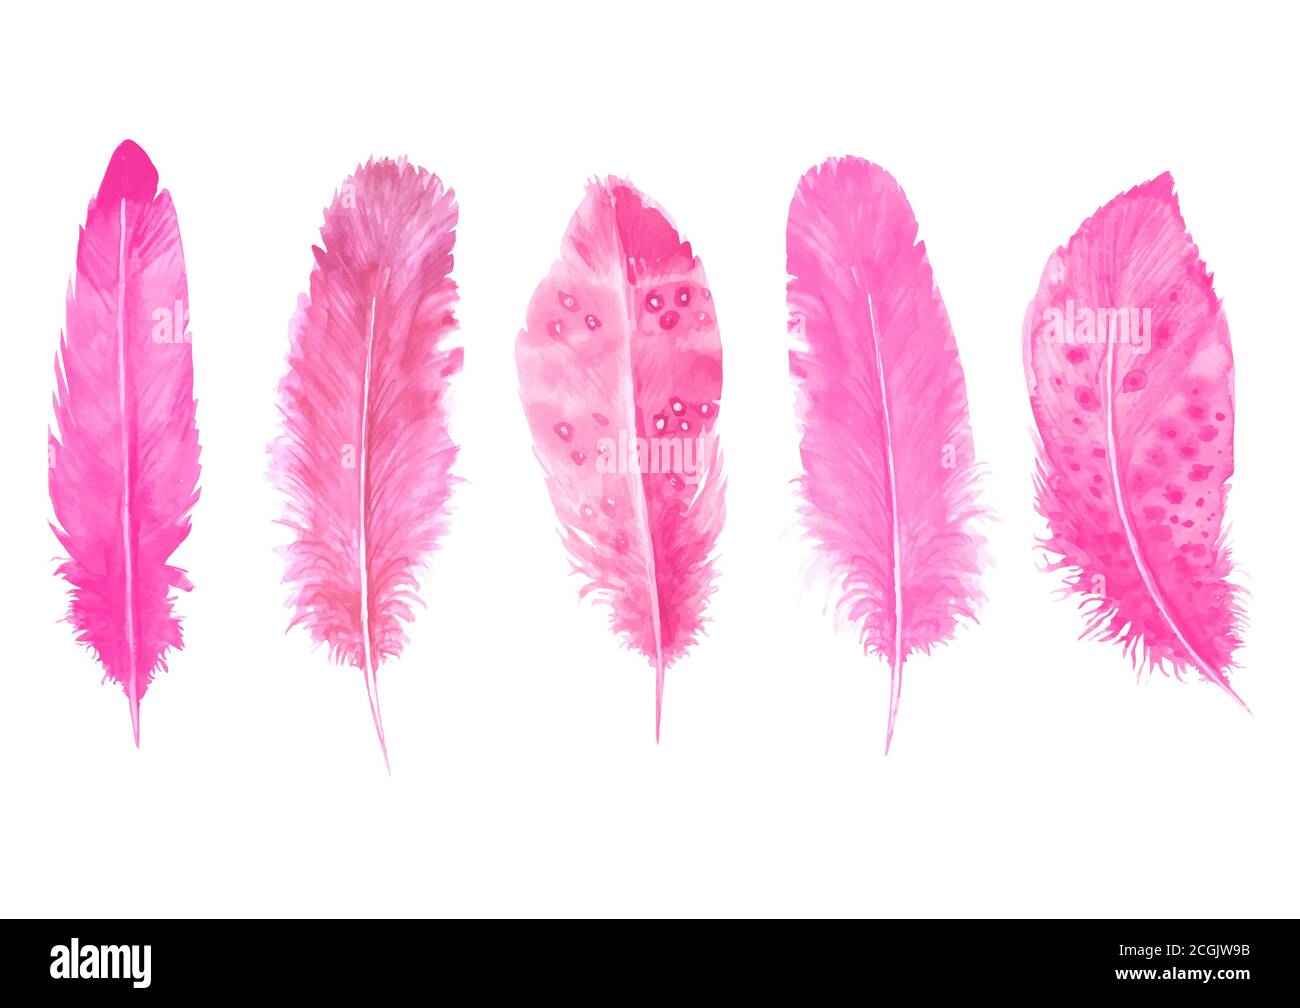 Aquarell rosa Federn auf weiß isoliert gesetzt. Handgezeichnete Aquarell Vogelfeder lebendige Illustration. Print-Design für T-Shirts, Einladung, weddi Stock Vektor